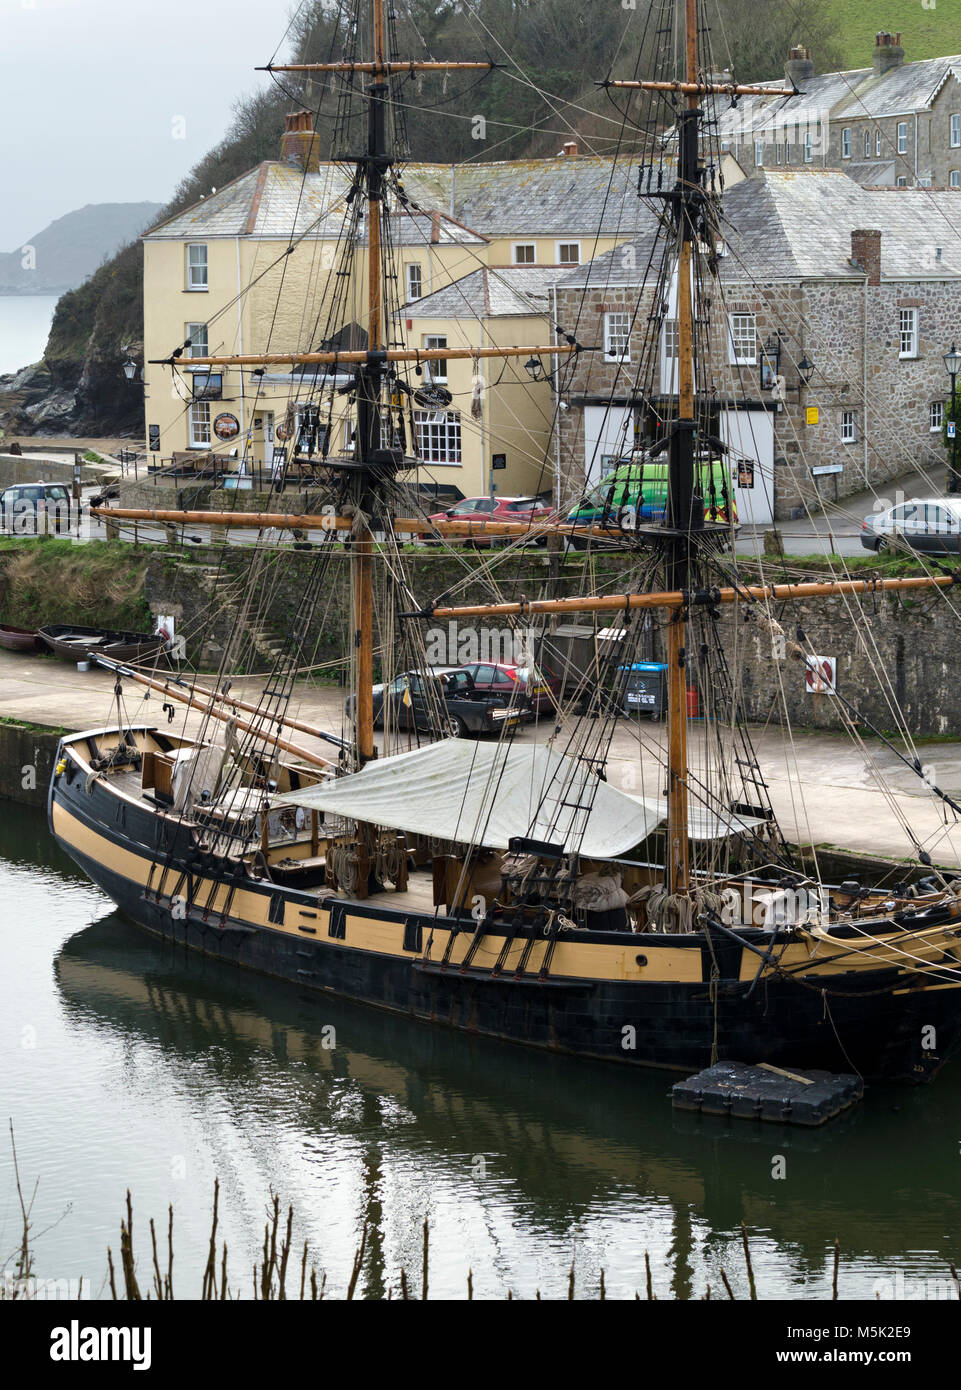 Il Phoenix Tall Ship, legno nave a vela ormeggiata in Charlestown Harbour, Cornwall, Inghilterra. Charlestown è stata utilizzata come location per le riprese Poldark. Foto Stock